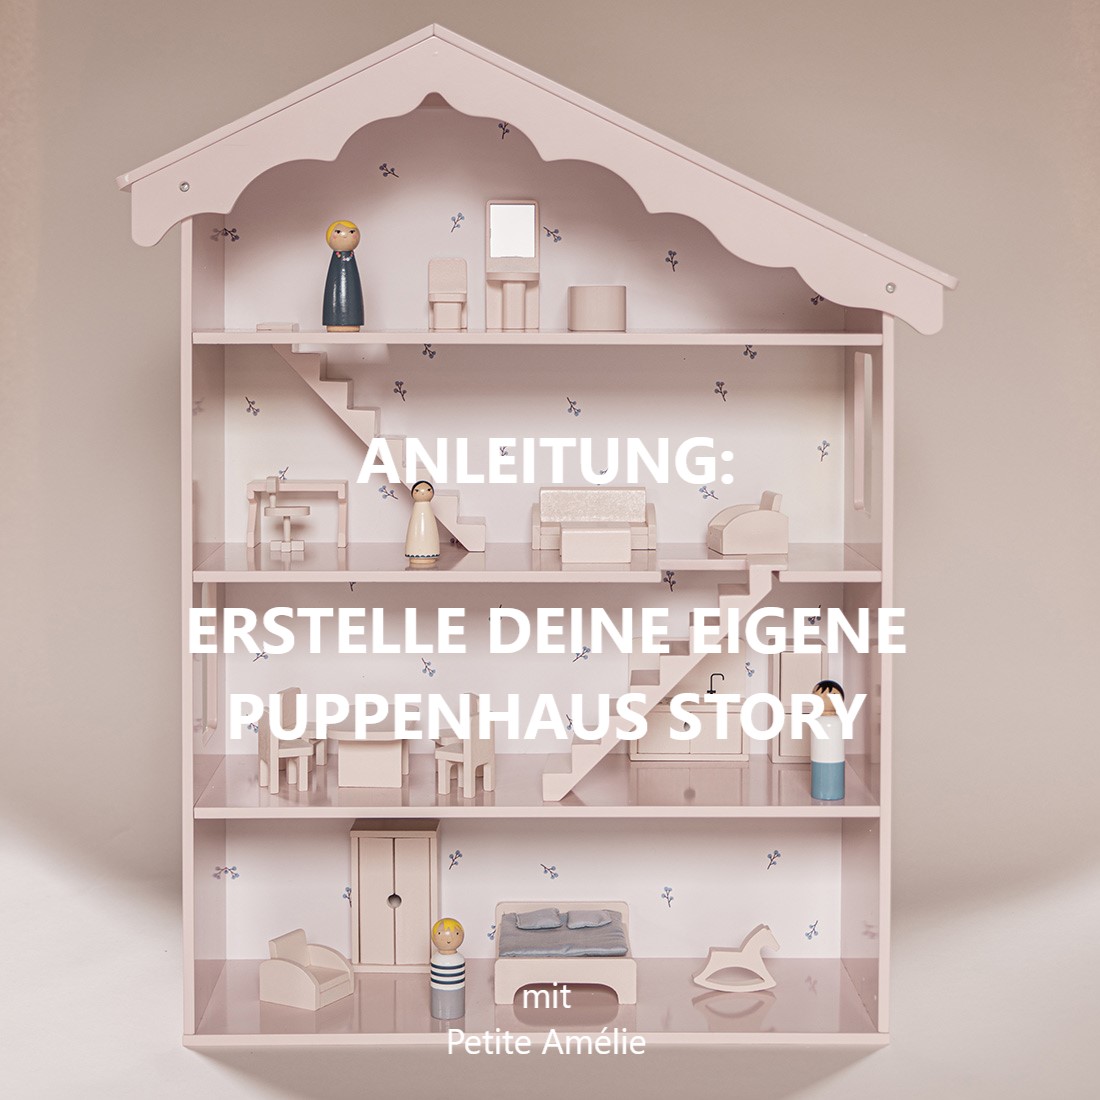 Anleitung: Erstelle deine eigene Puppenhaus-Story!